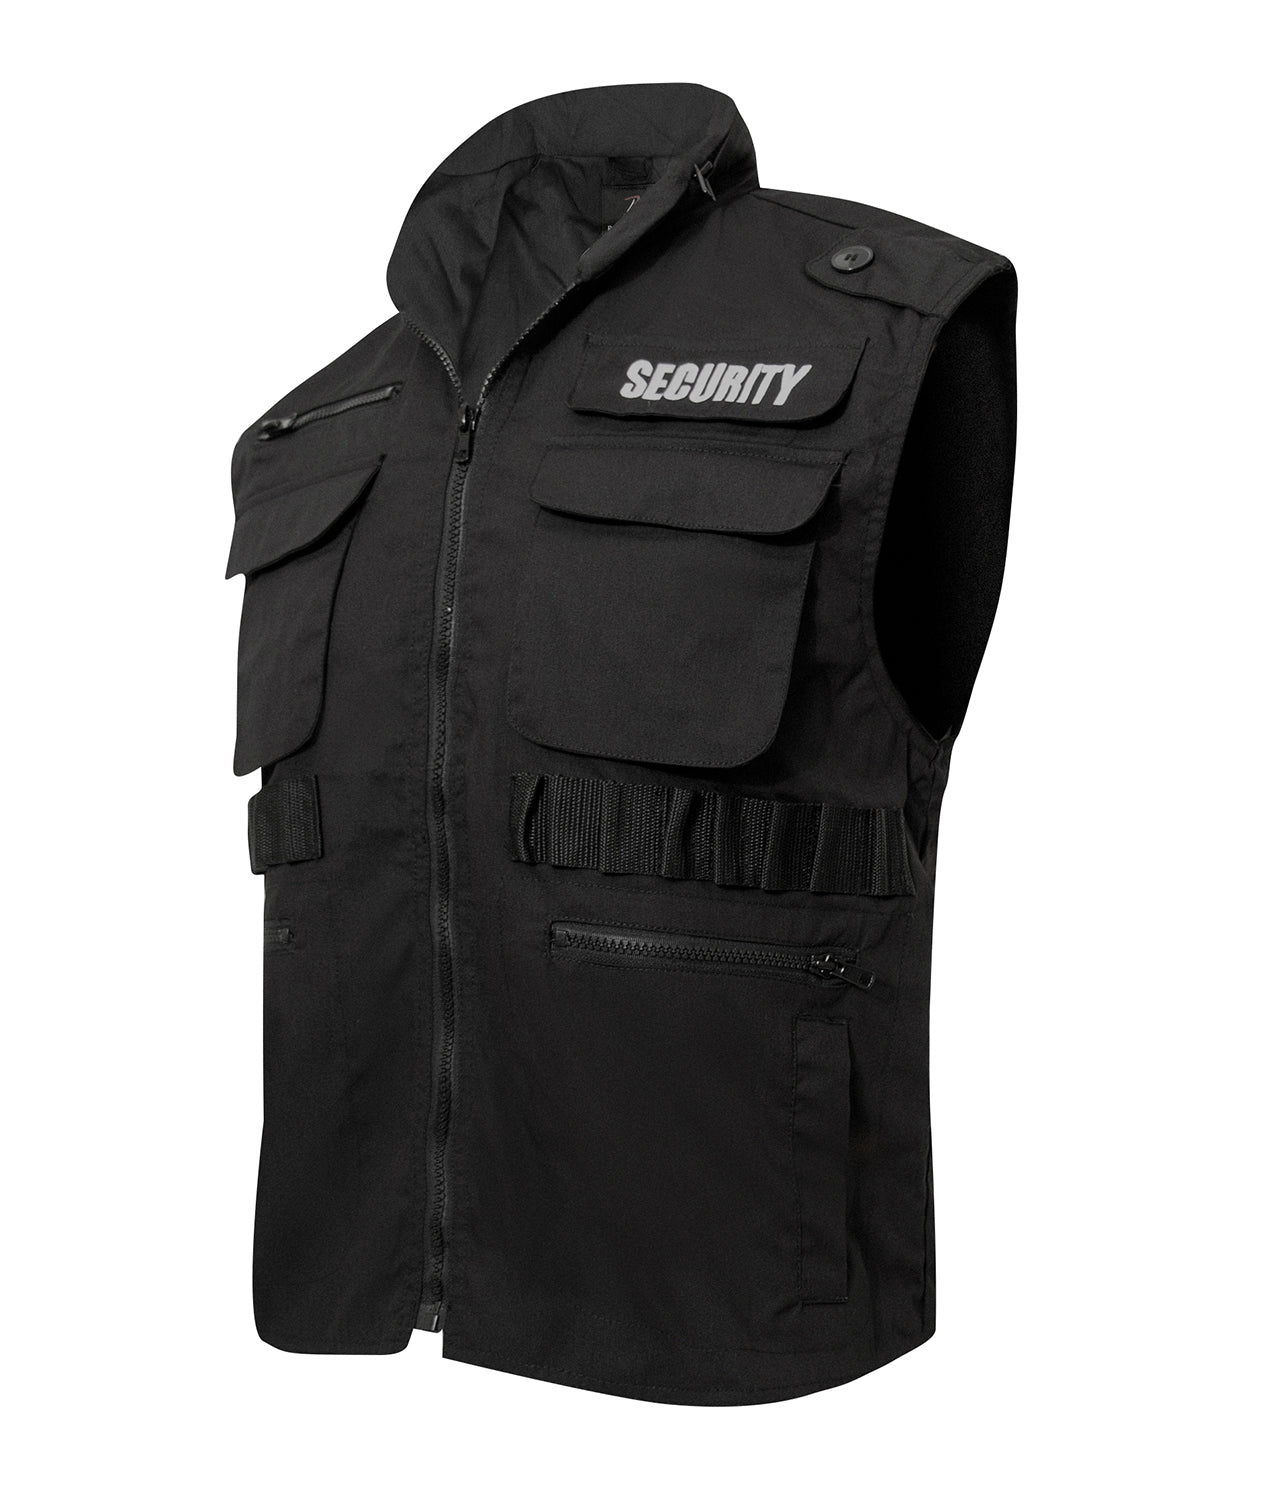 Security Ranger Vest - Tactical Choice Plus